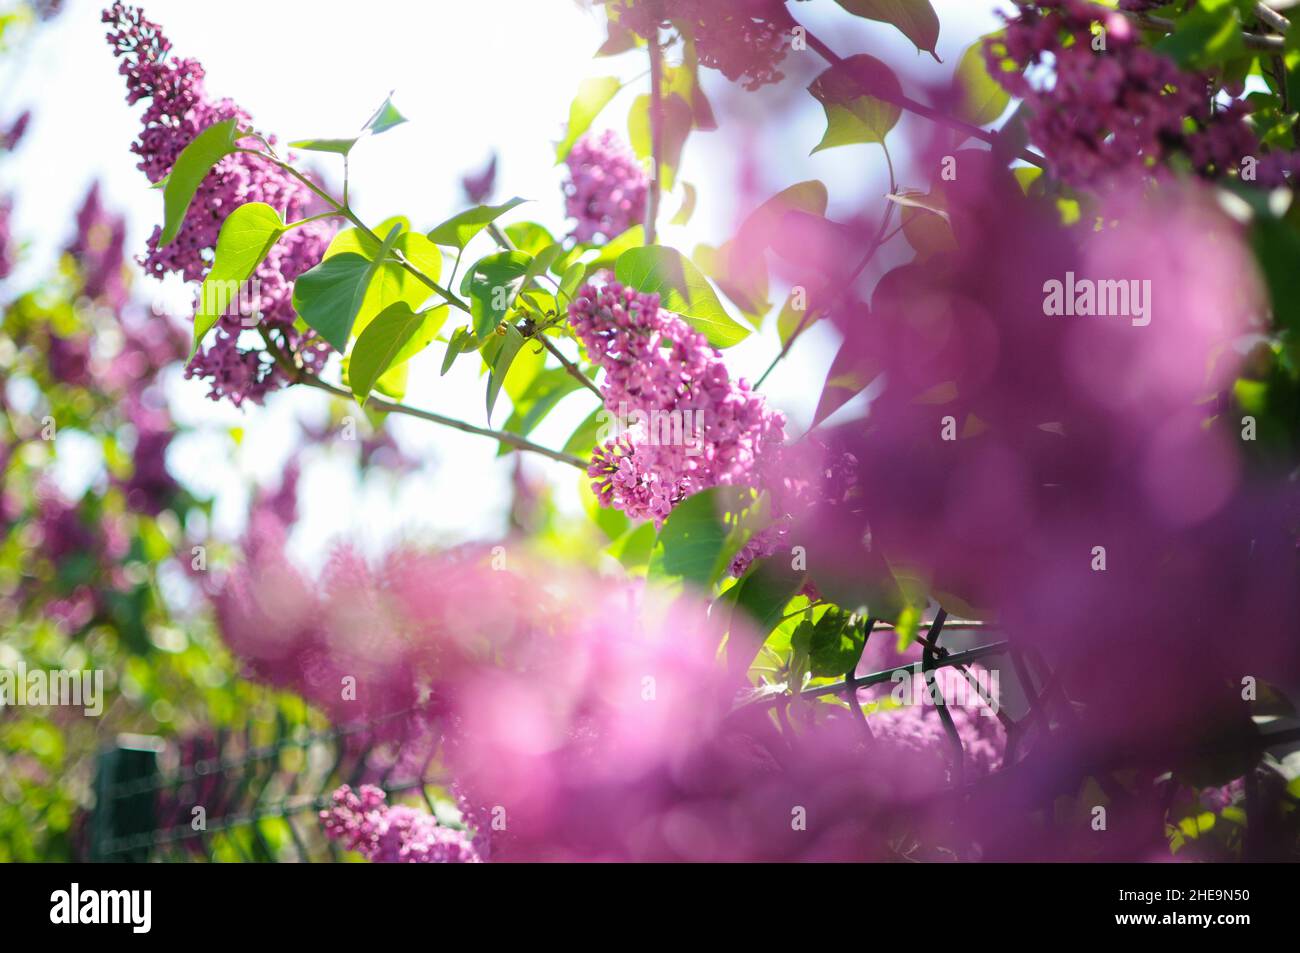 Fleurs de lilas à l'arbre.Vue floue à l'avant-plan et clarté à l'arrière-plan. Banque D'Images